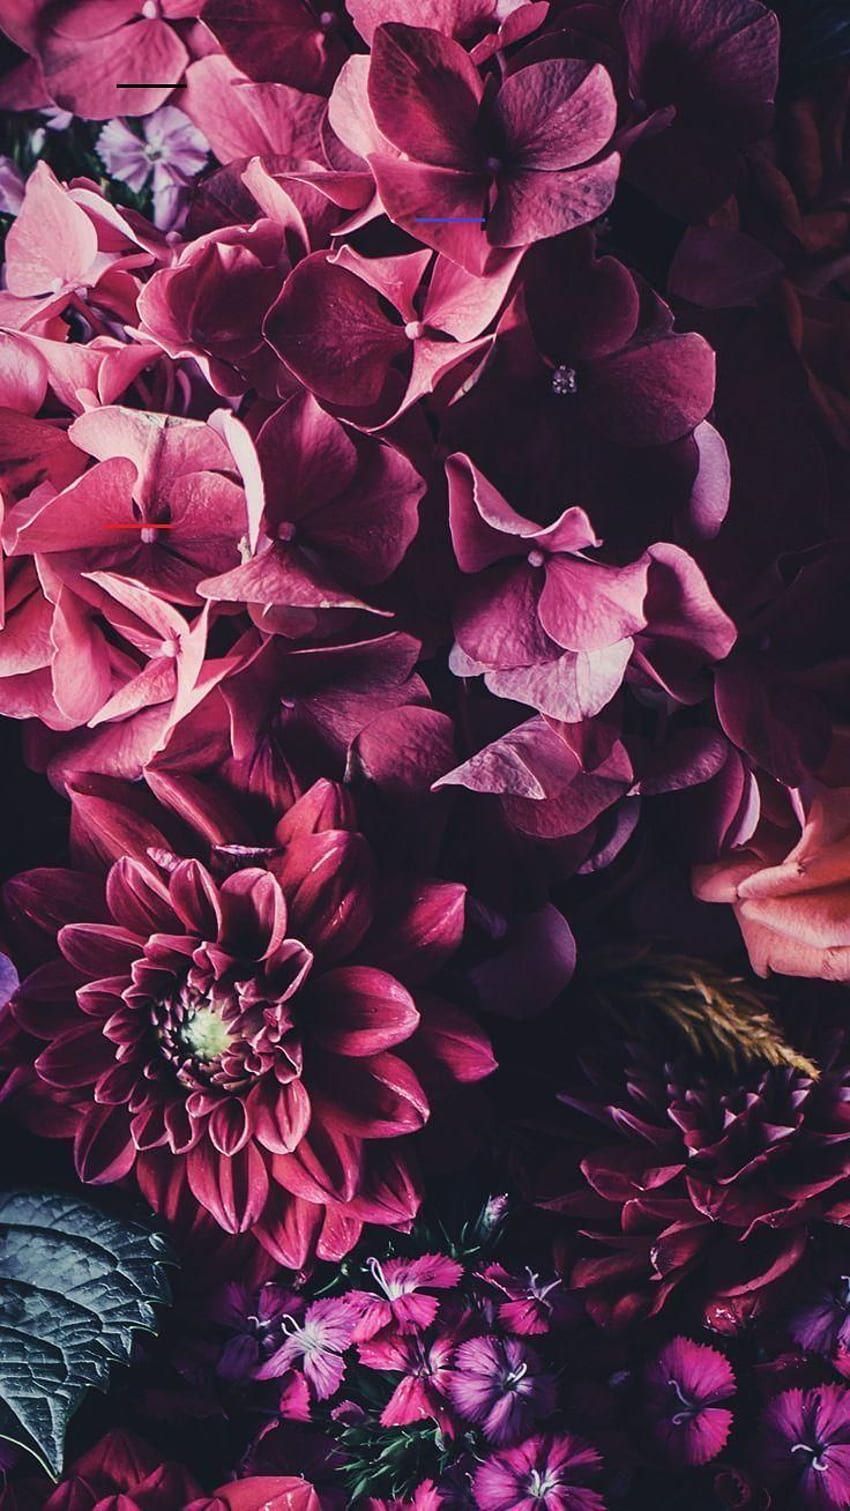  Blumen Hintergrundbild 850x1511. Hintergrundbilderiphone. Blumen hintergrund iphone, Blumentapete, Telefon hintergrundbilder HD phone wallpaper